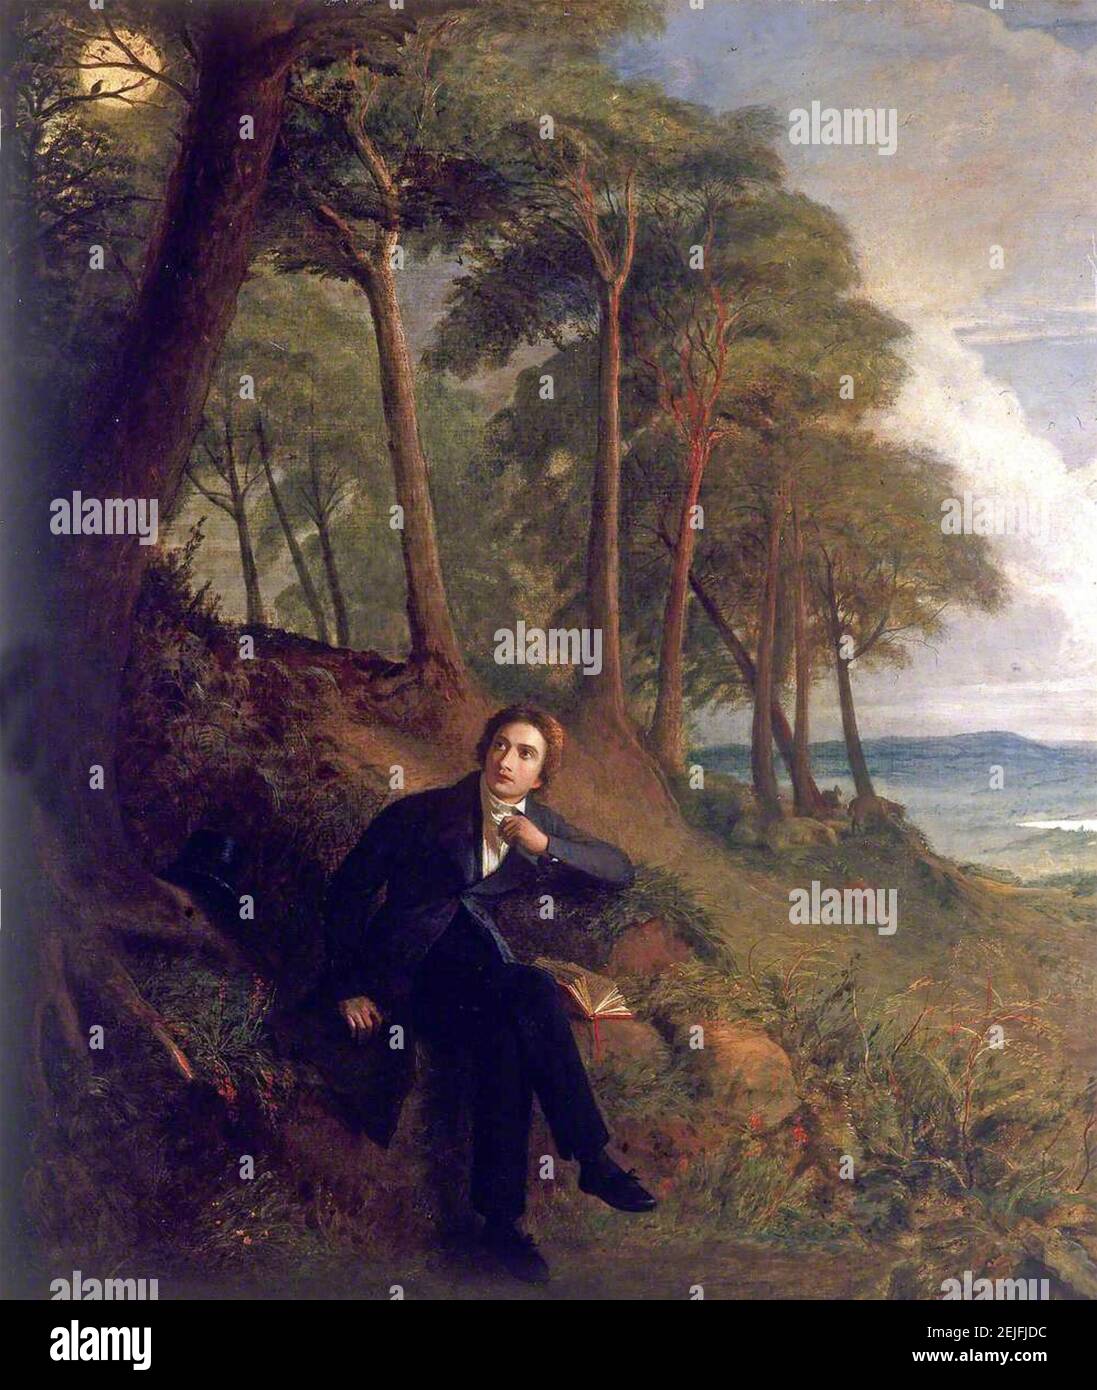 JOHN KEATS (1795-1821) poète anglais. La peinture de 1845 par Joseph Severn montrant Keats assis sur Hampstead Heath à l'écoute d'une Nightingale Banque D'Images